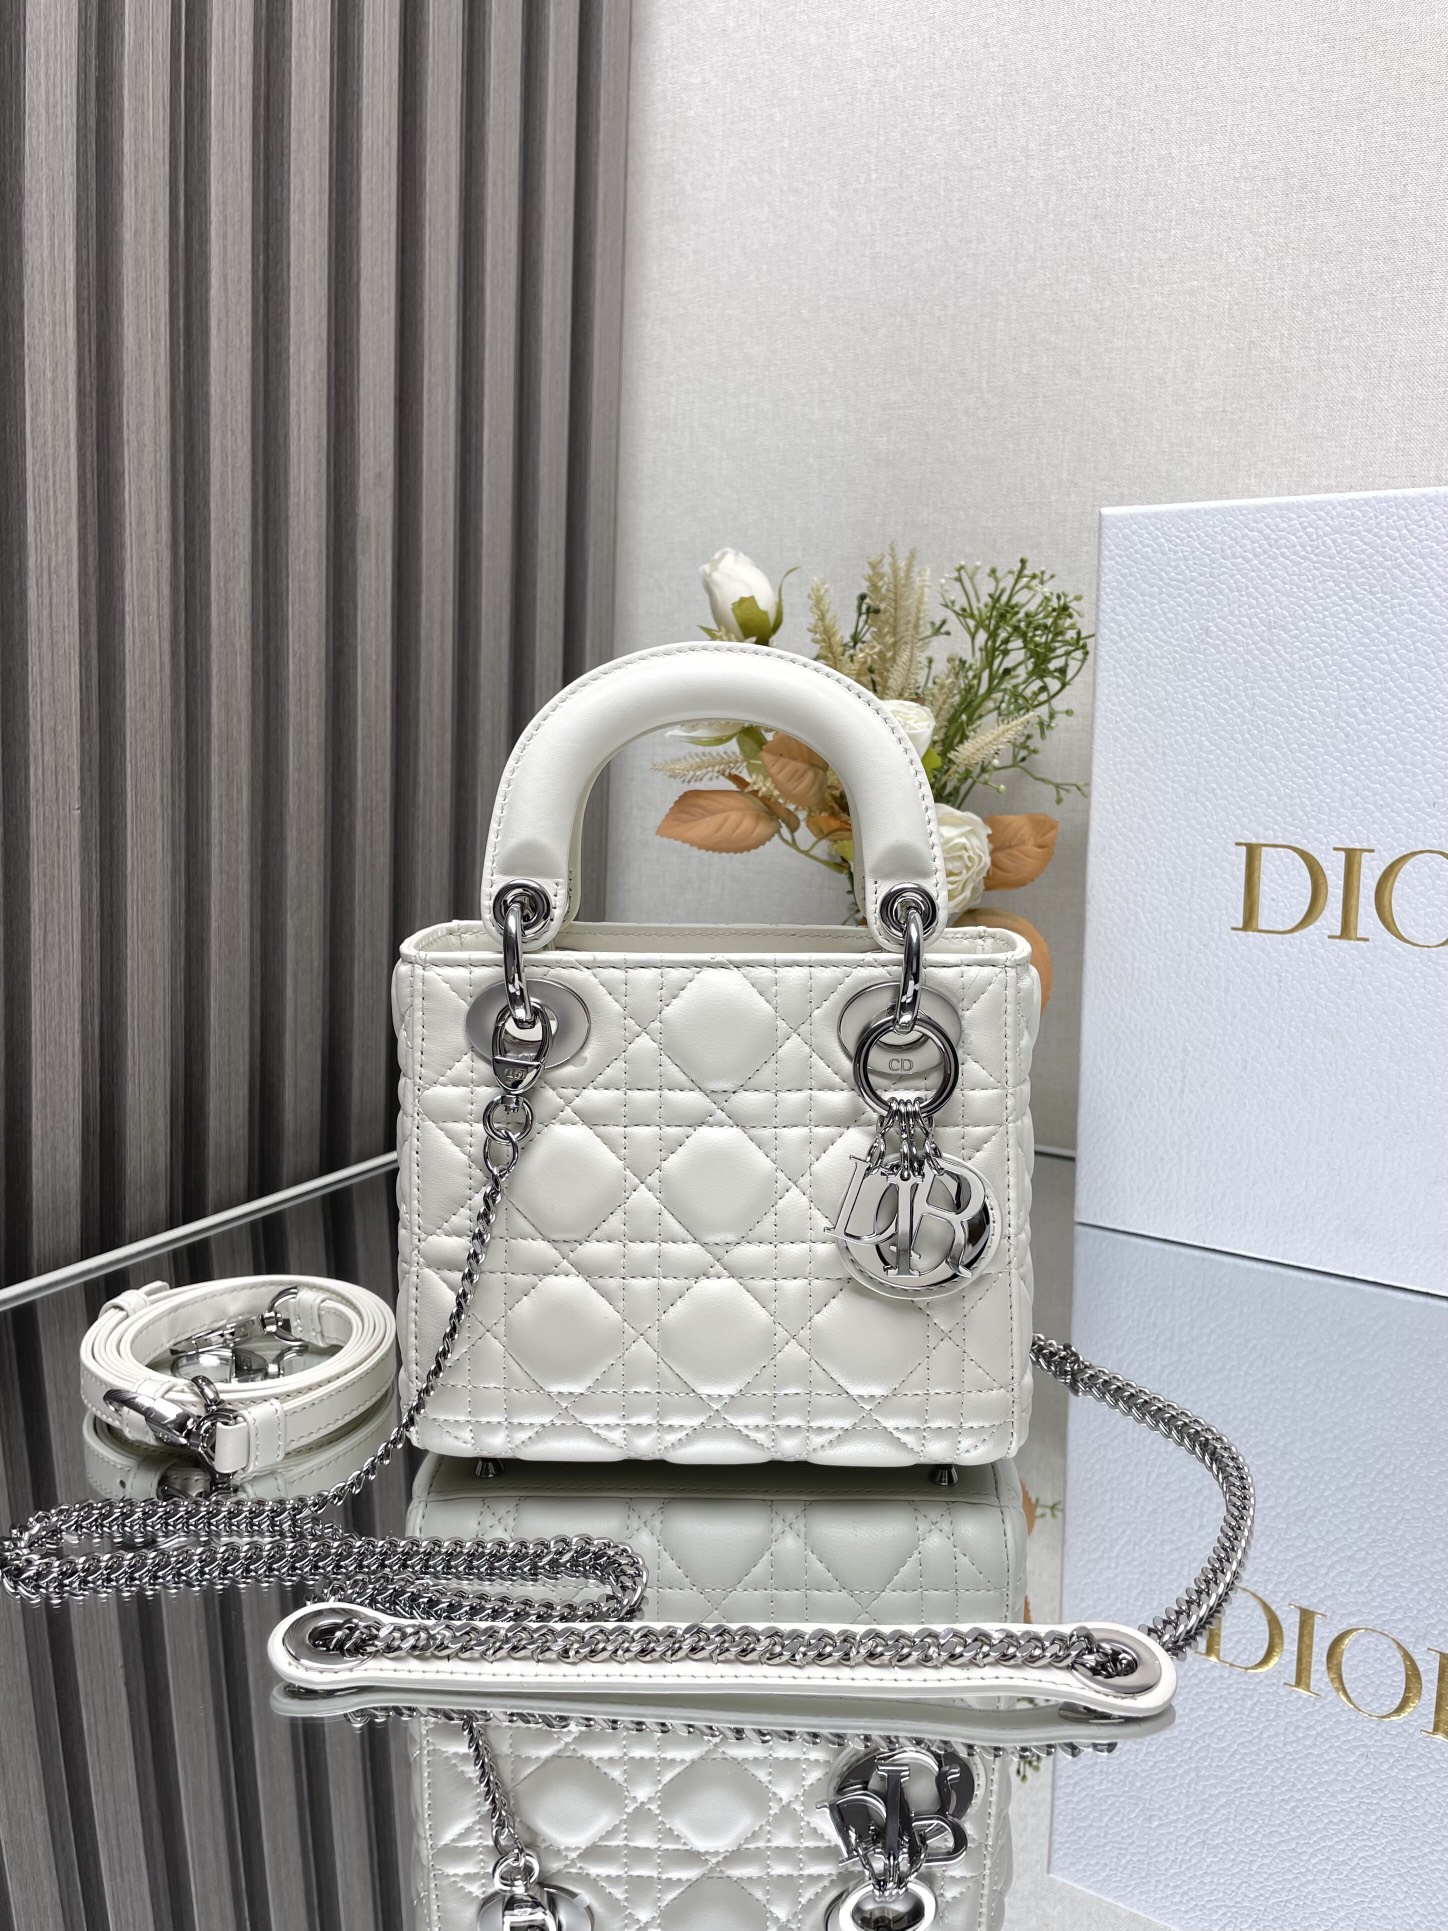 דיור Dior Lady תיקים תיקי יד תיקי כתף וצד לבן Lambskin עור כבשים